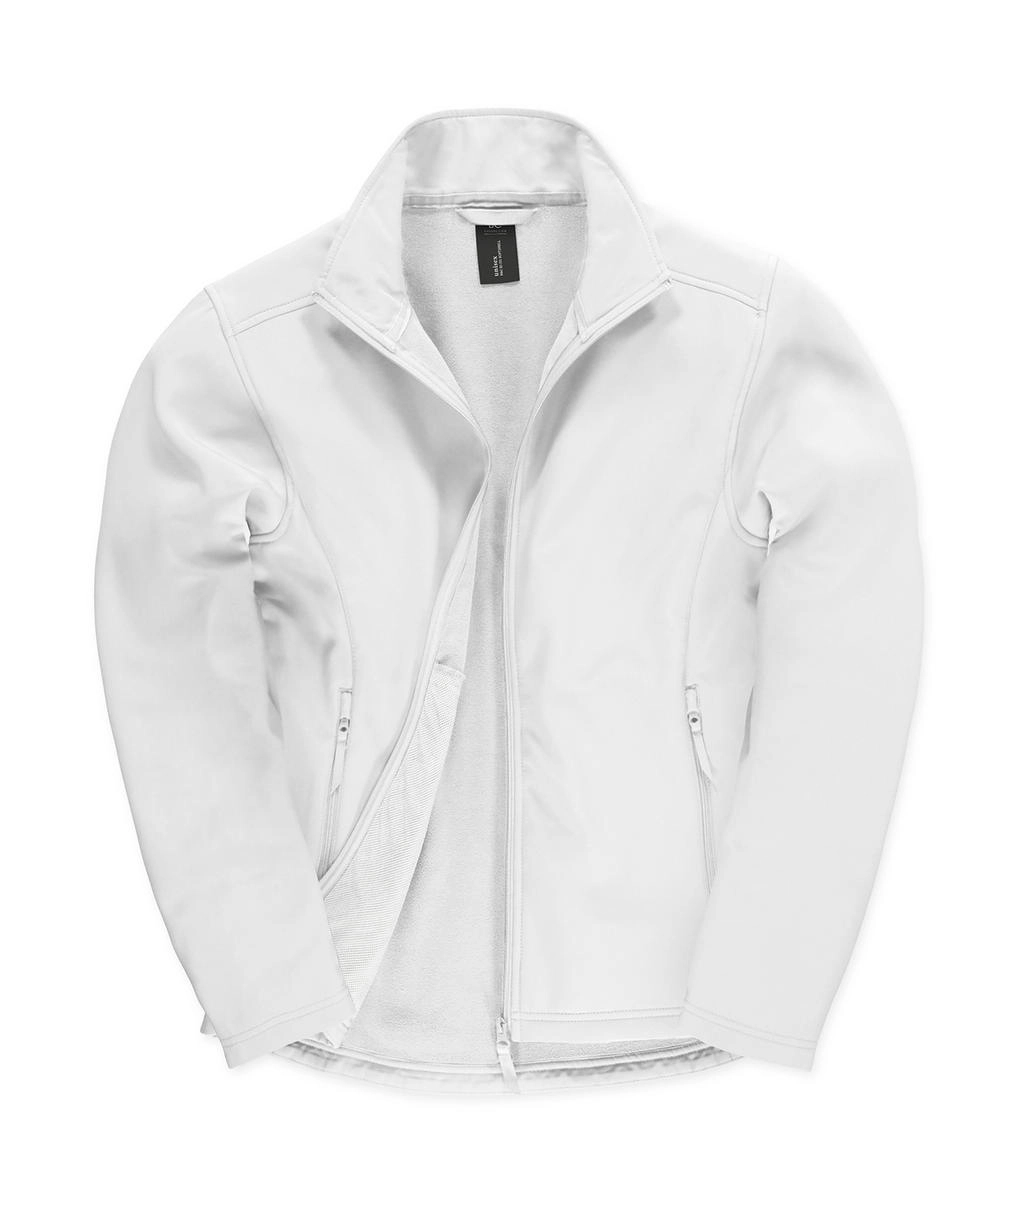 ID.701 Softshell Jacket zum Besticken und Bedrucken in der Farbe White/White mit Ihren Logo, Schriftzug oder Motiv.